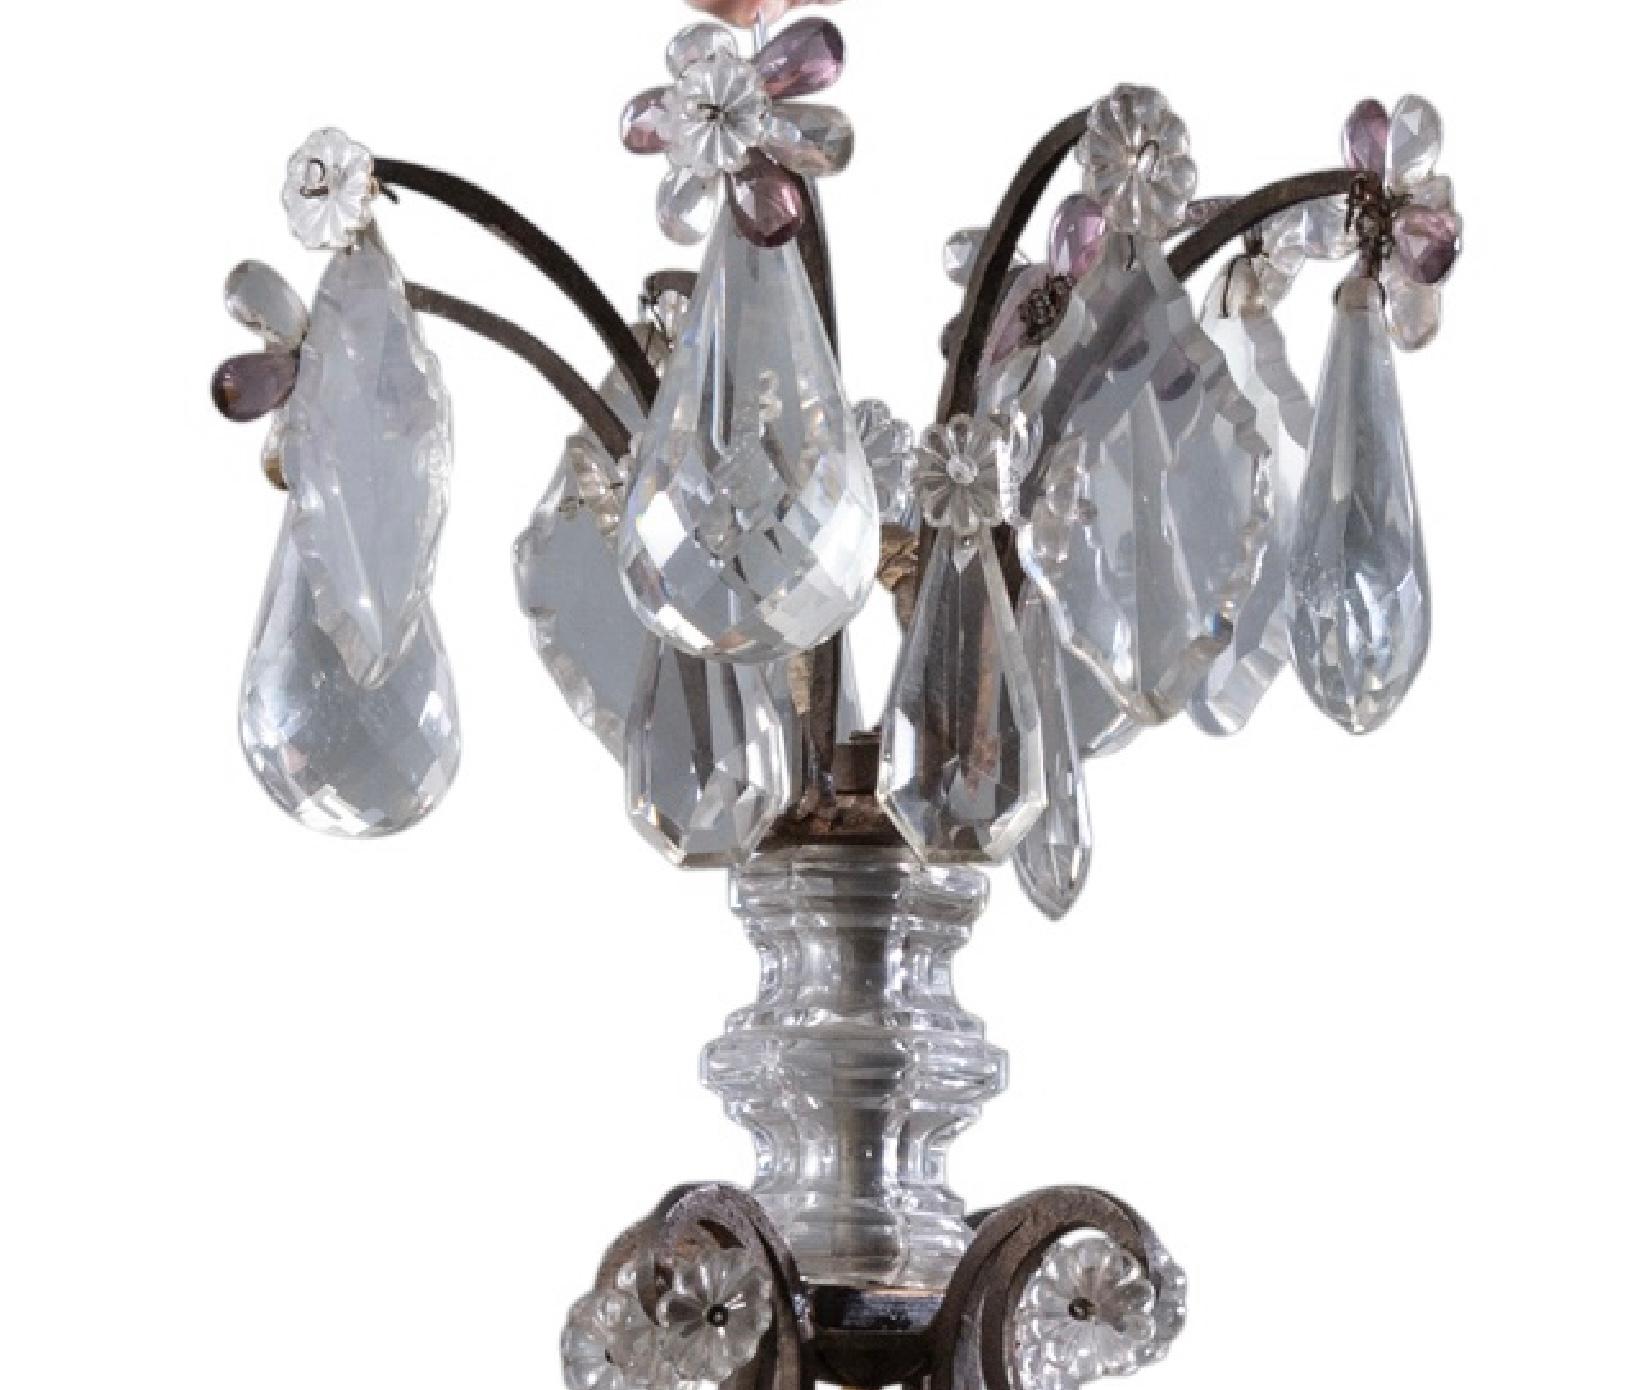 Grand lustre à huit lumières en fer et verre taillé de style Louis XV. Le lustre est composé de prismes en verre incolore et améthyste. Merveilleuse patine d'usage. Parfait pour tous les décors.
